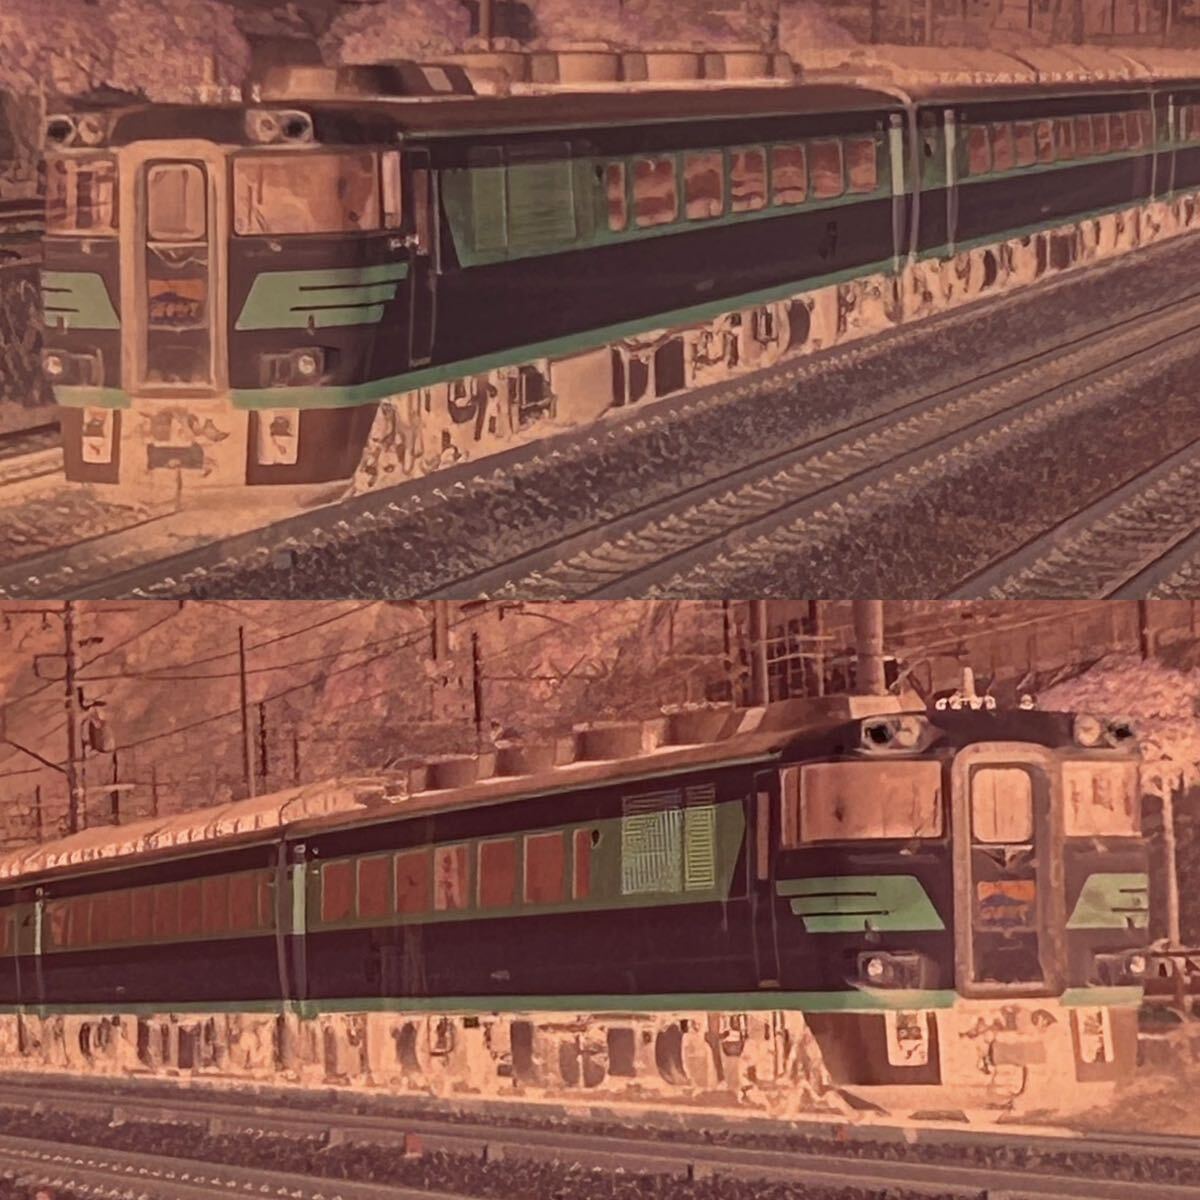  old railroad photograph nega film EF651066 EF8146 EF659. height ..EF6614 is ...EF6599 EF58150 super . bird row car Showa era train (042801